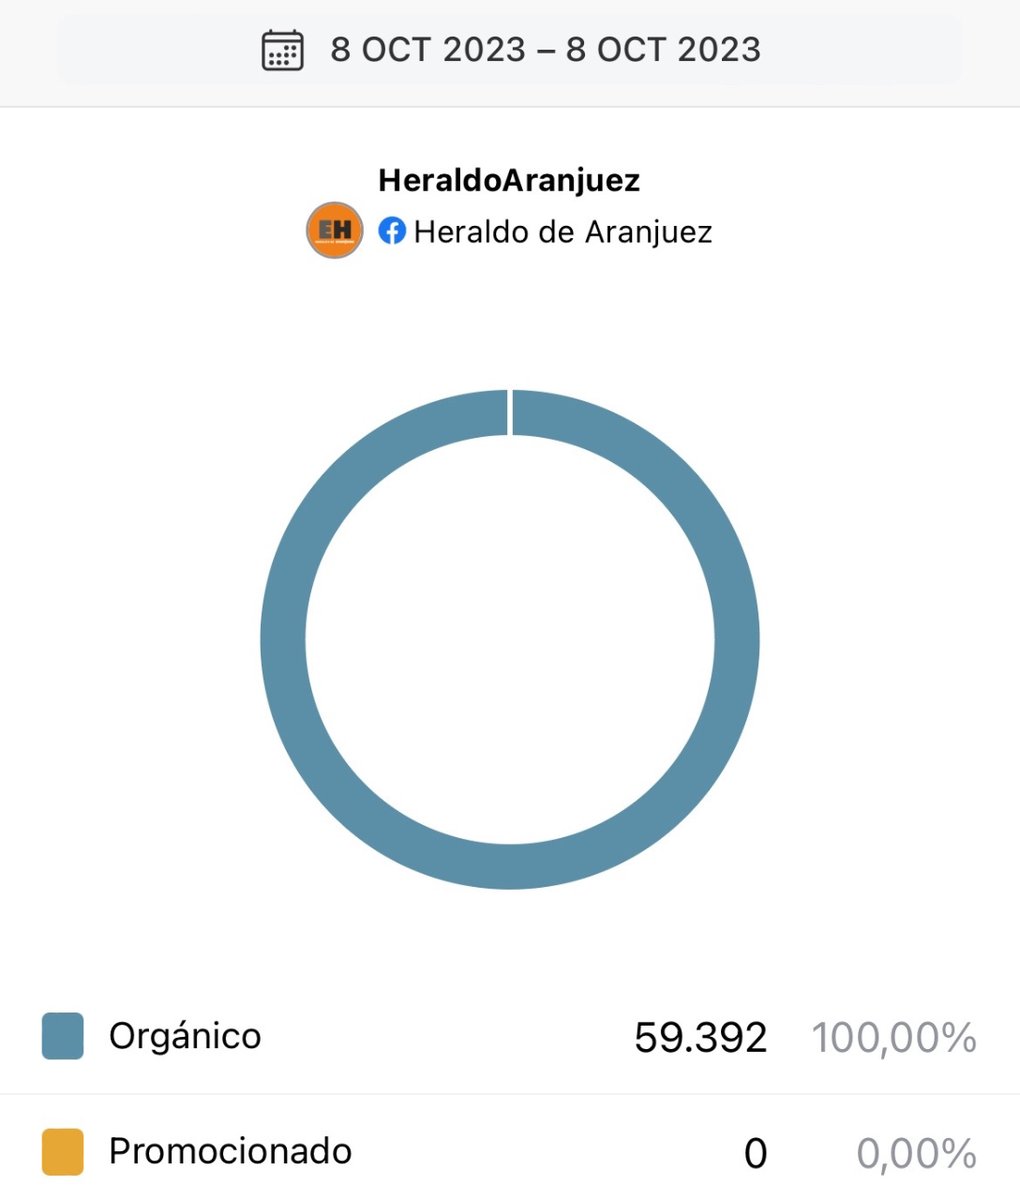 Gracias a todos por participar en el Heraldo
Entre todos conseguiremos un #Aranjuezmejor
Casi 60.000 alcances diarios son la prueba.